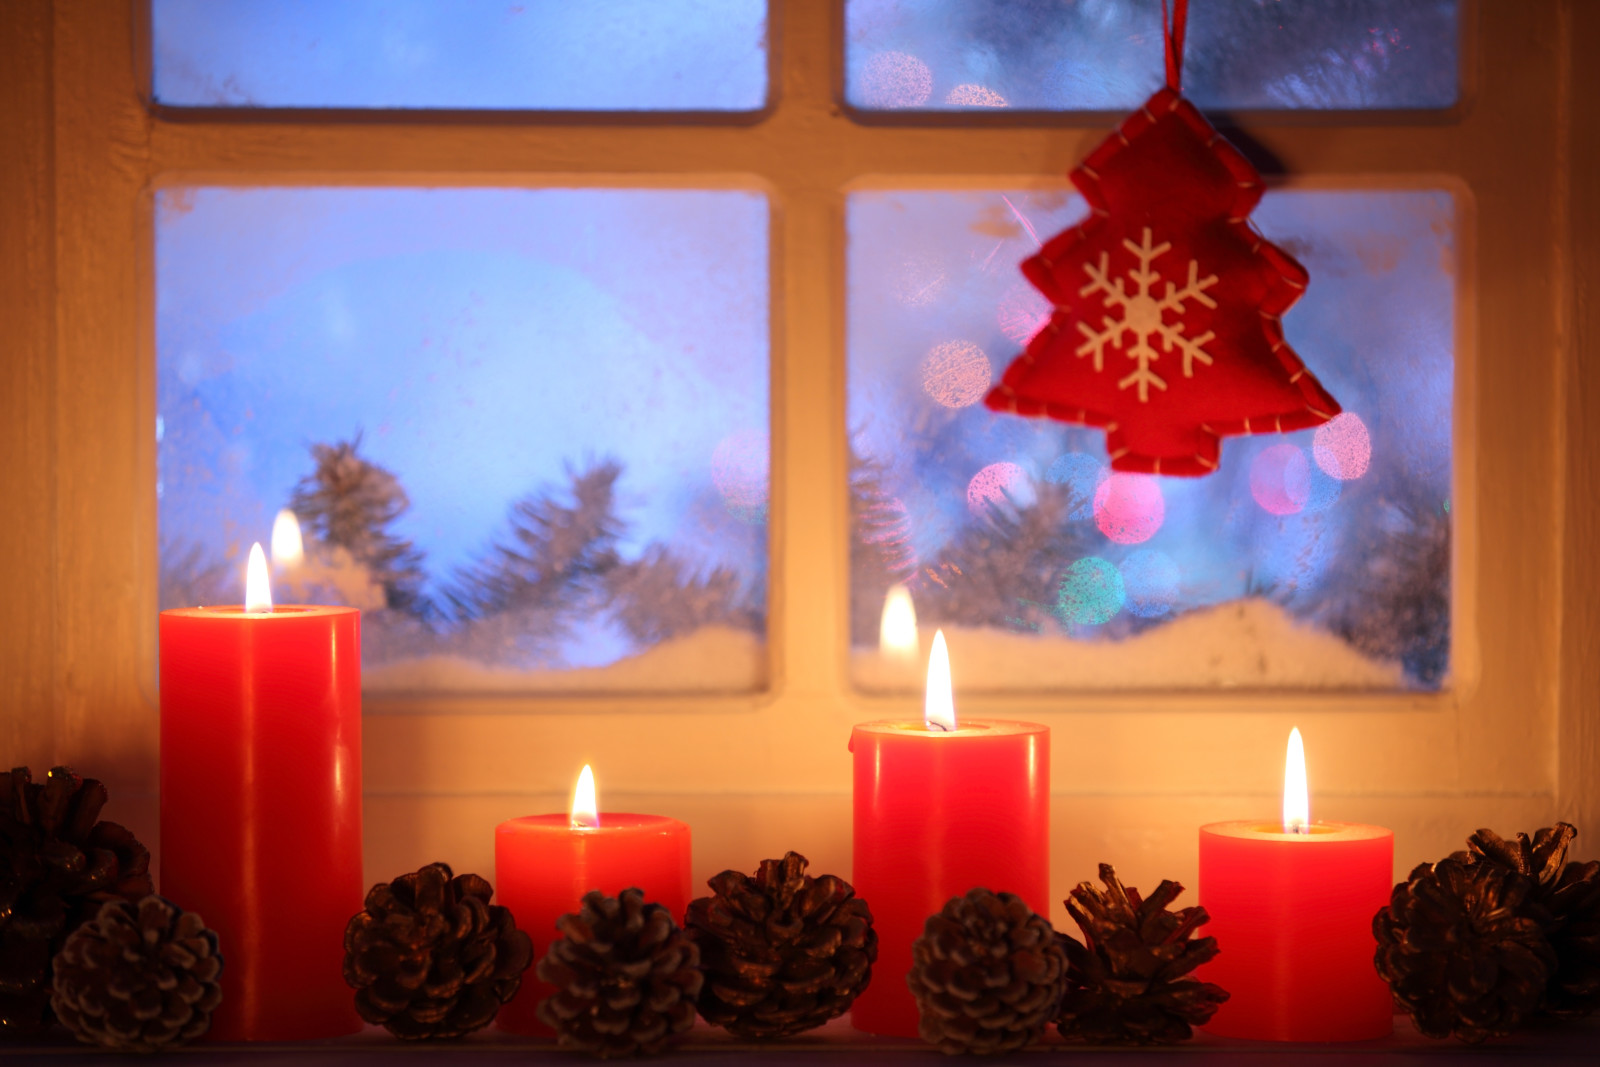 눈, 새해, 크리스마스, 장식, 명랑한, 빛, 겨울, 크리스마스